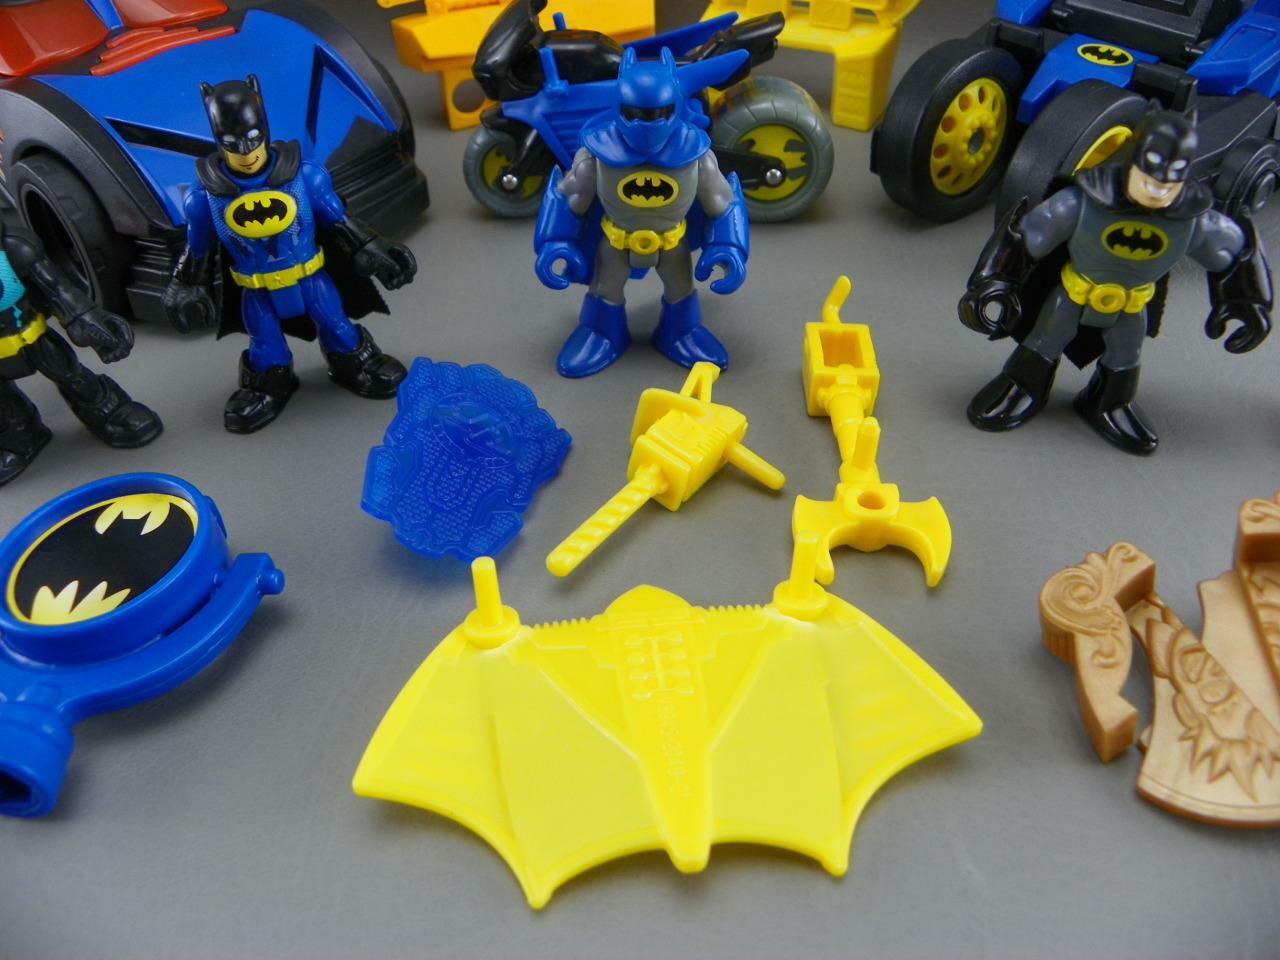 Imaginext DC Super Friends voiture Batmobile avec effets lumineux et lance  projectiles disques, 1 figurine Batman incluse, jouet enfant dès 3 ans